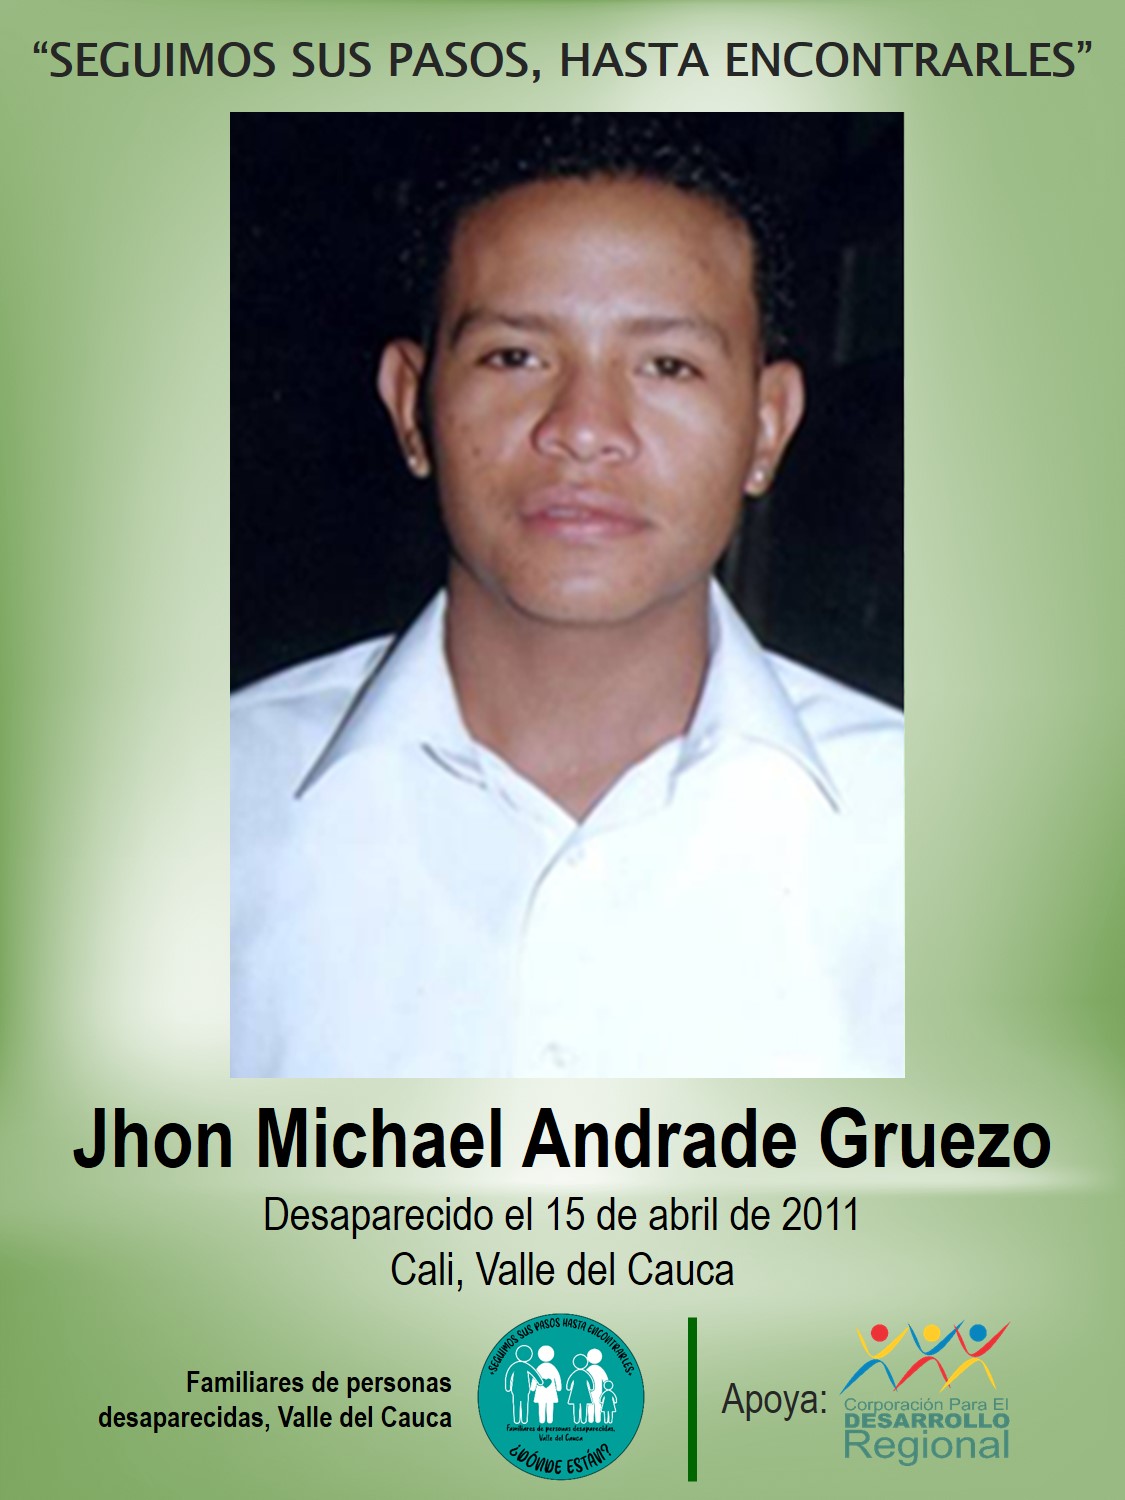 Jhon Michael Andrade Gruezo